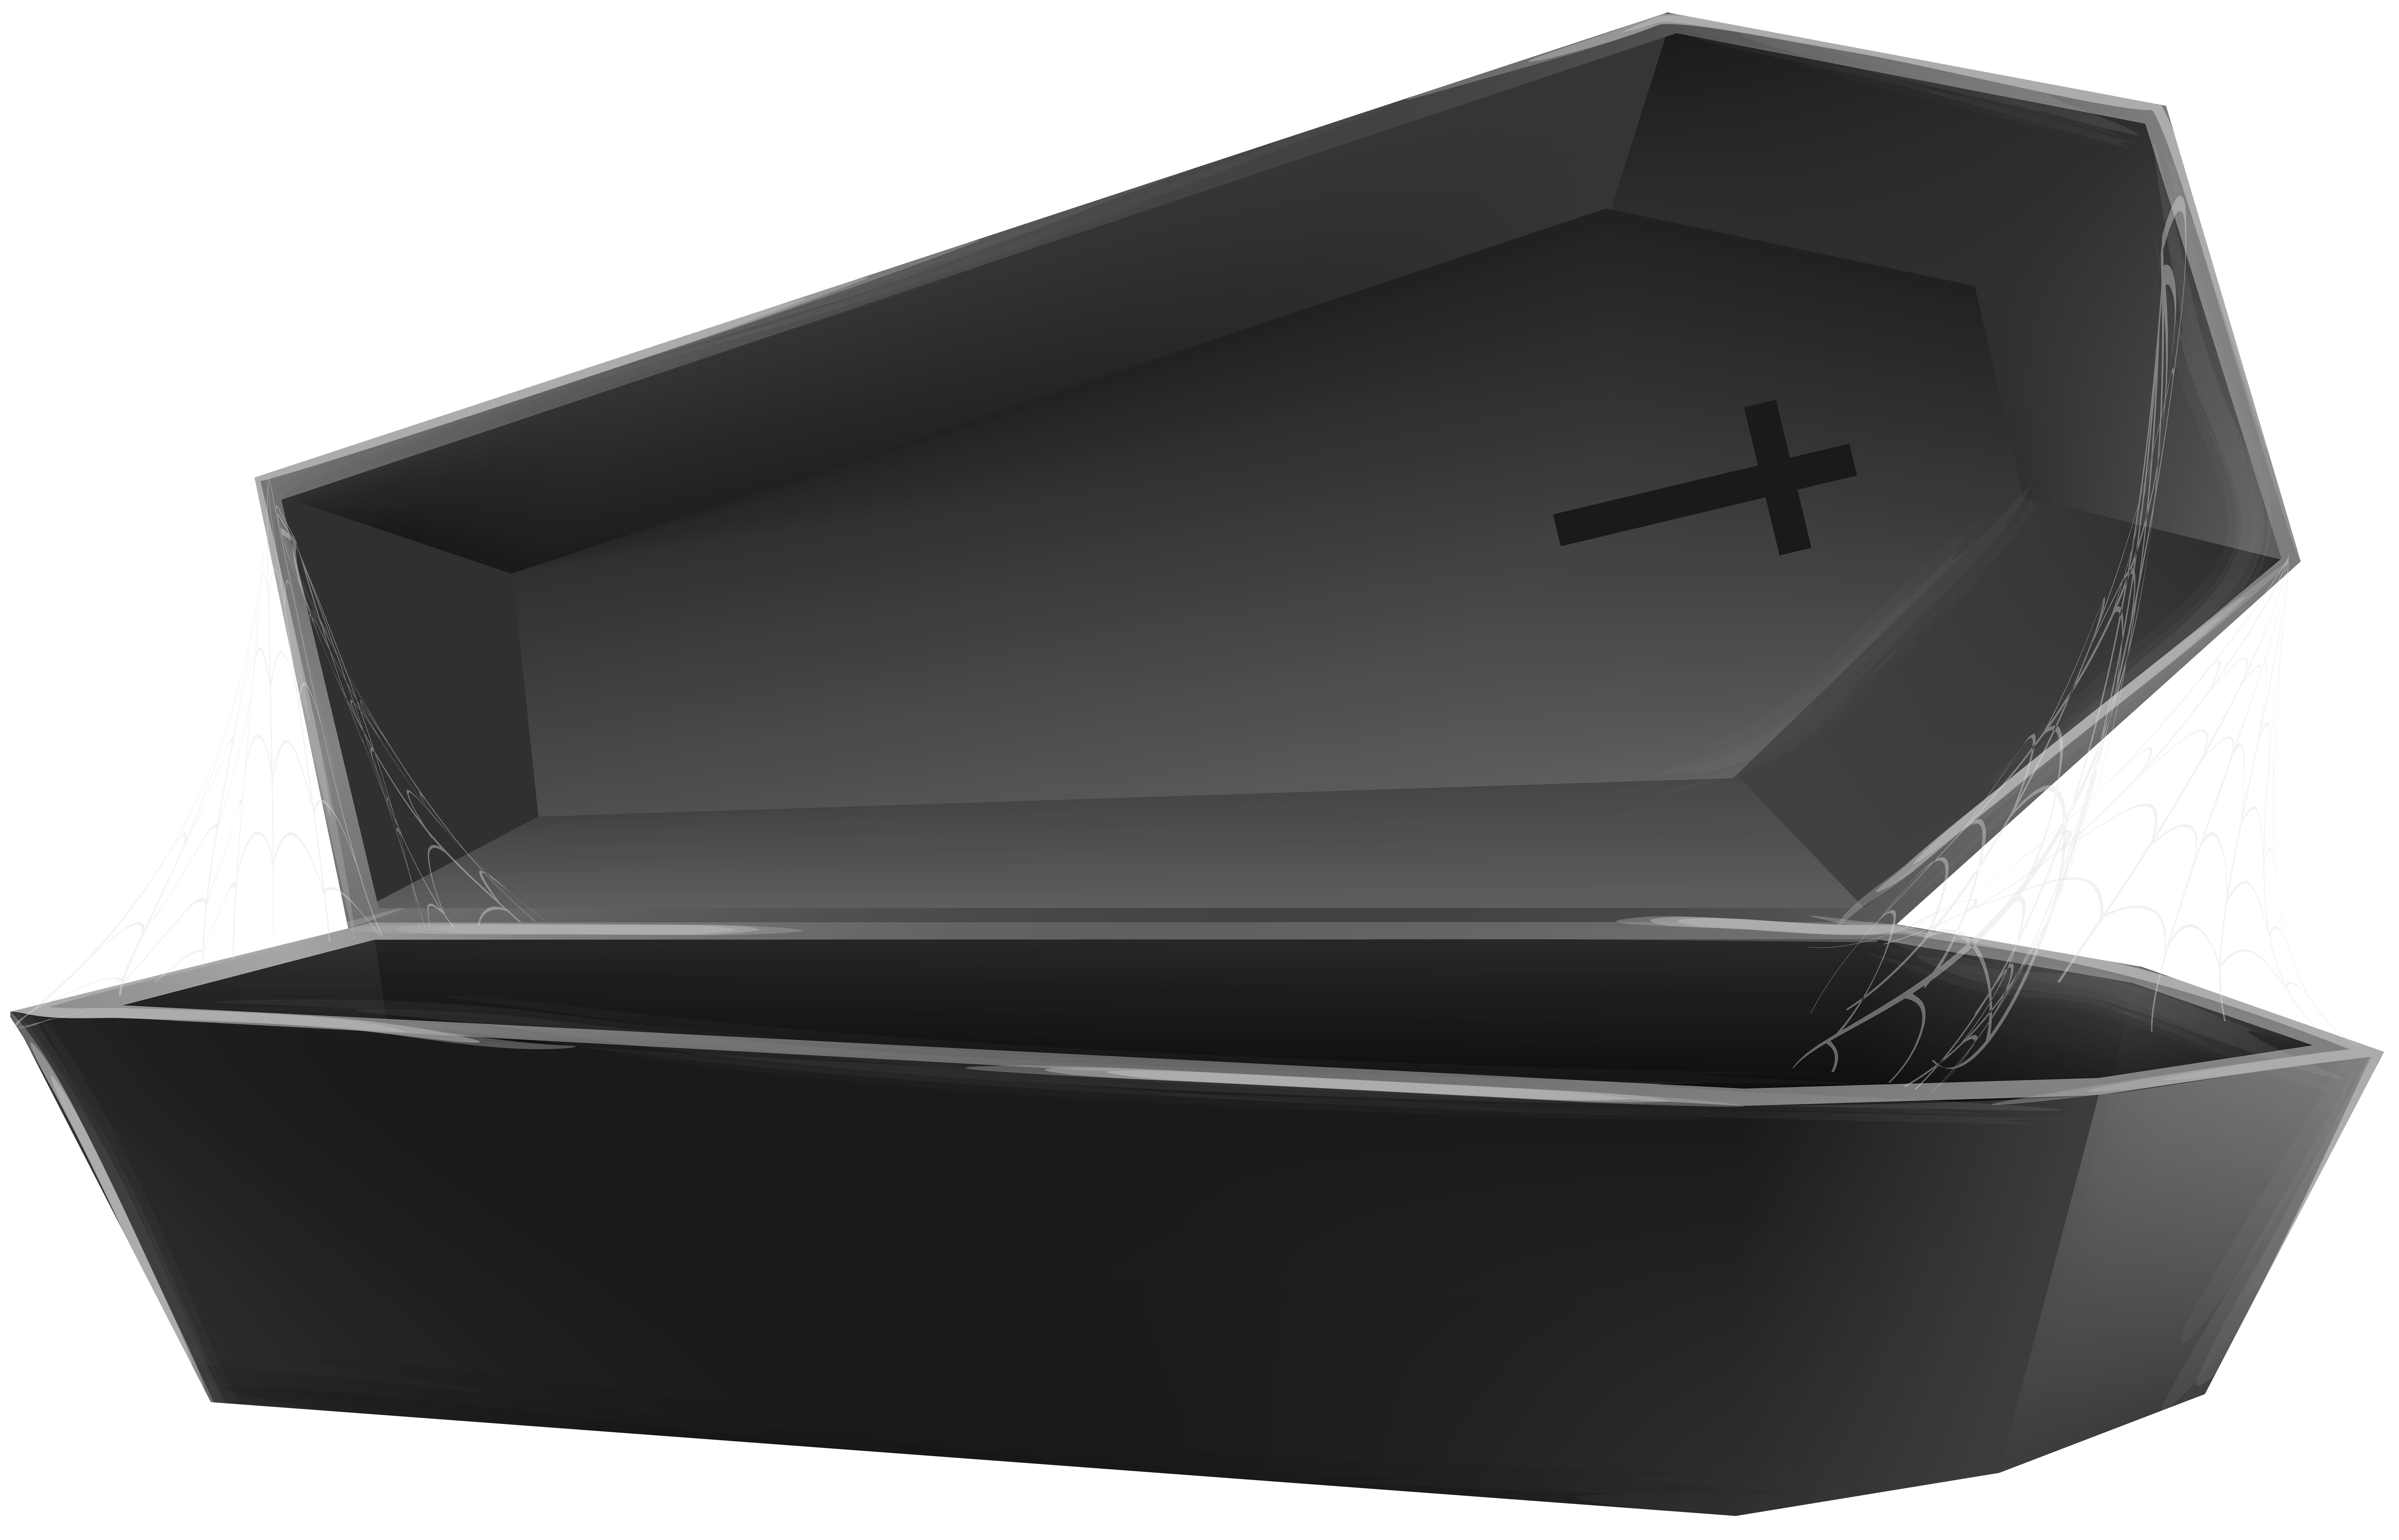 Coffin s. Коффин гроб. Гроб с открытой крышкой. Открытый гроб сбоку. Гроб на прозрачном фоне.